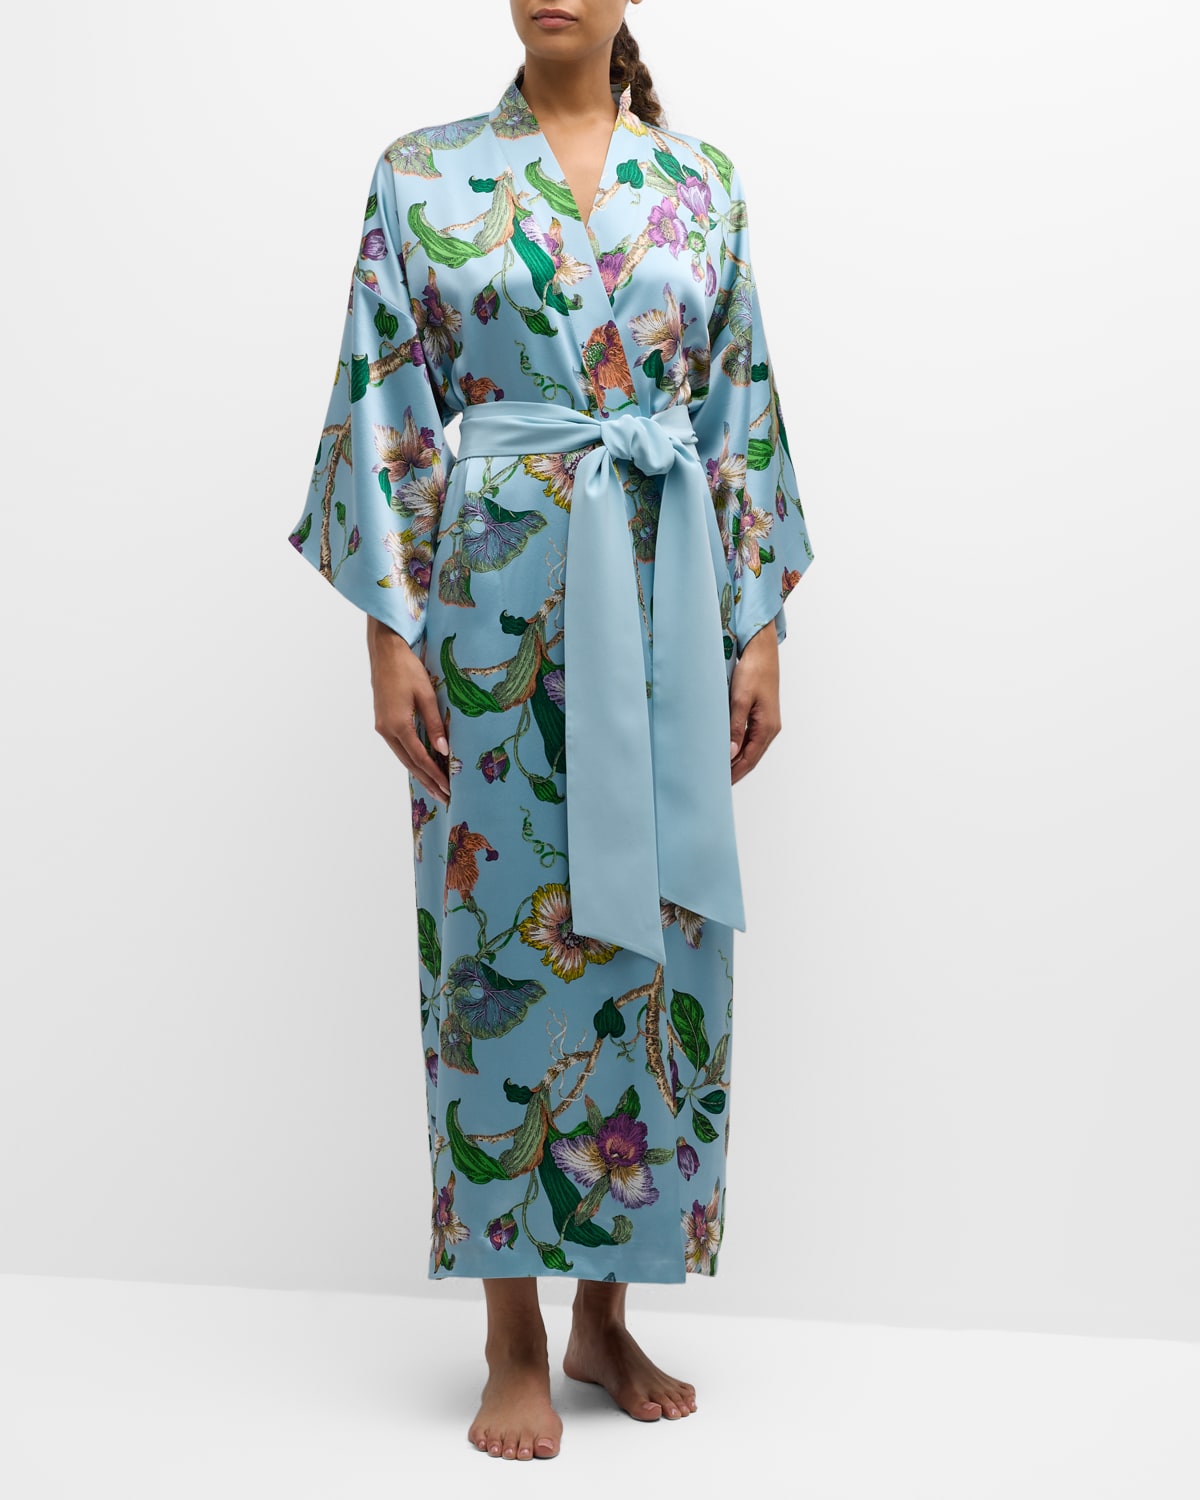 Queenie Floral-Print Silk Kimono Robe